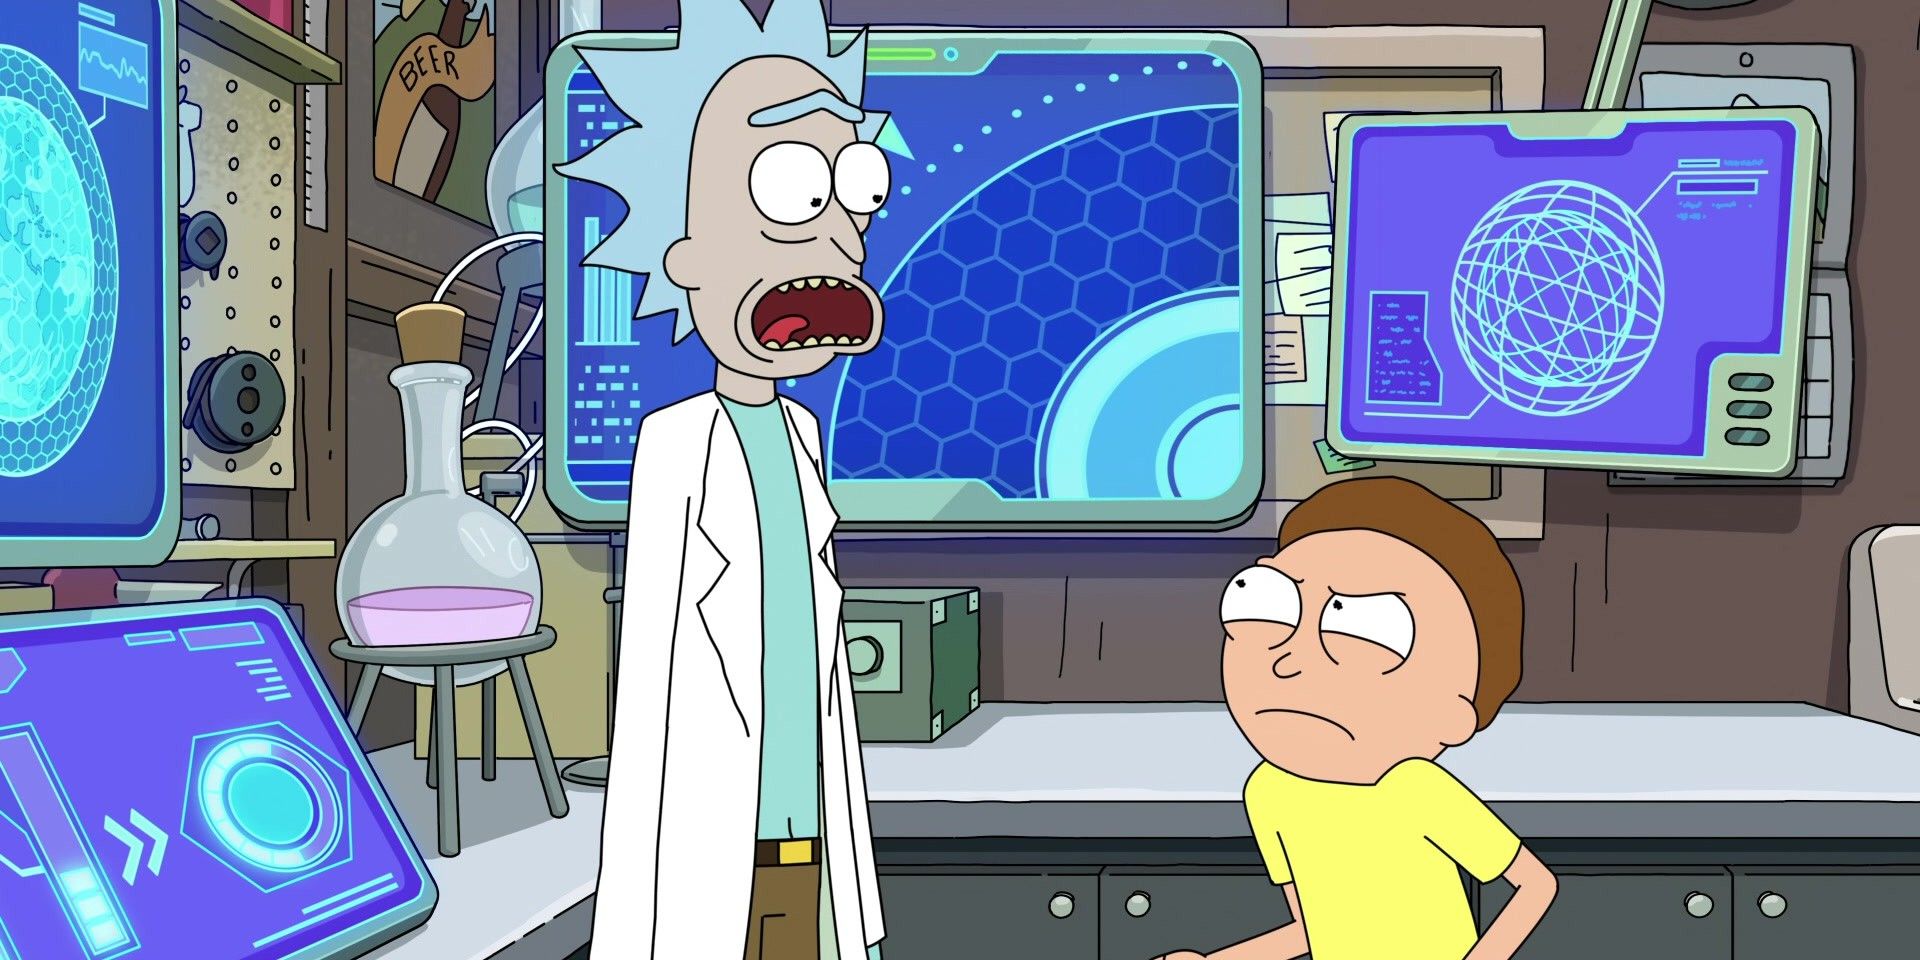 El creador de Rick & Morty responde a la reacción en línea a la refundición principal